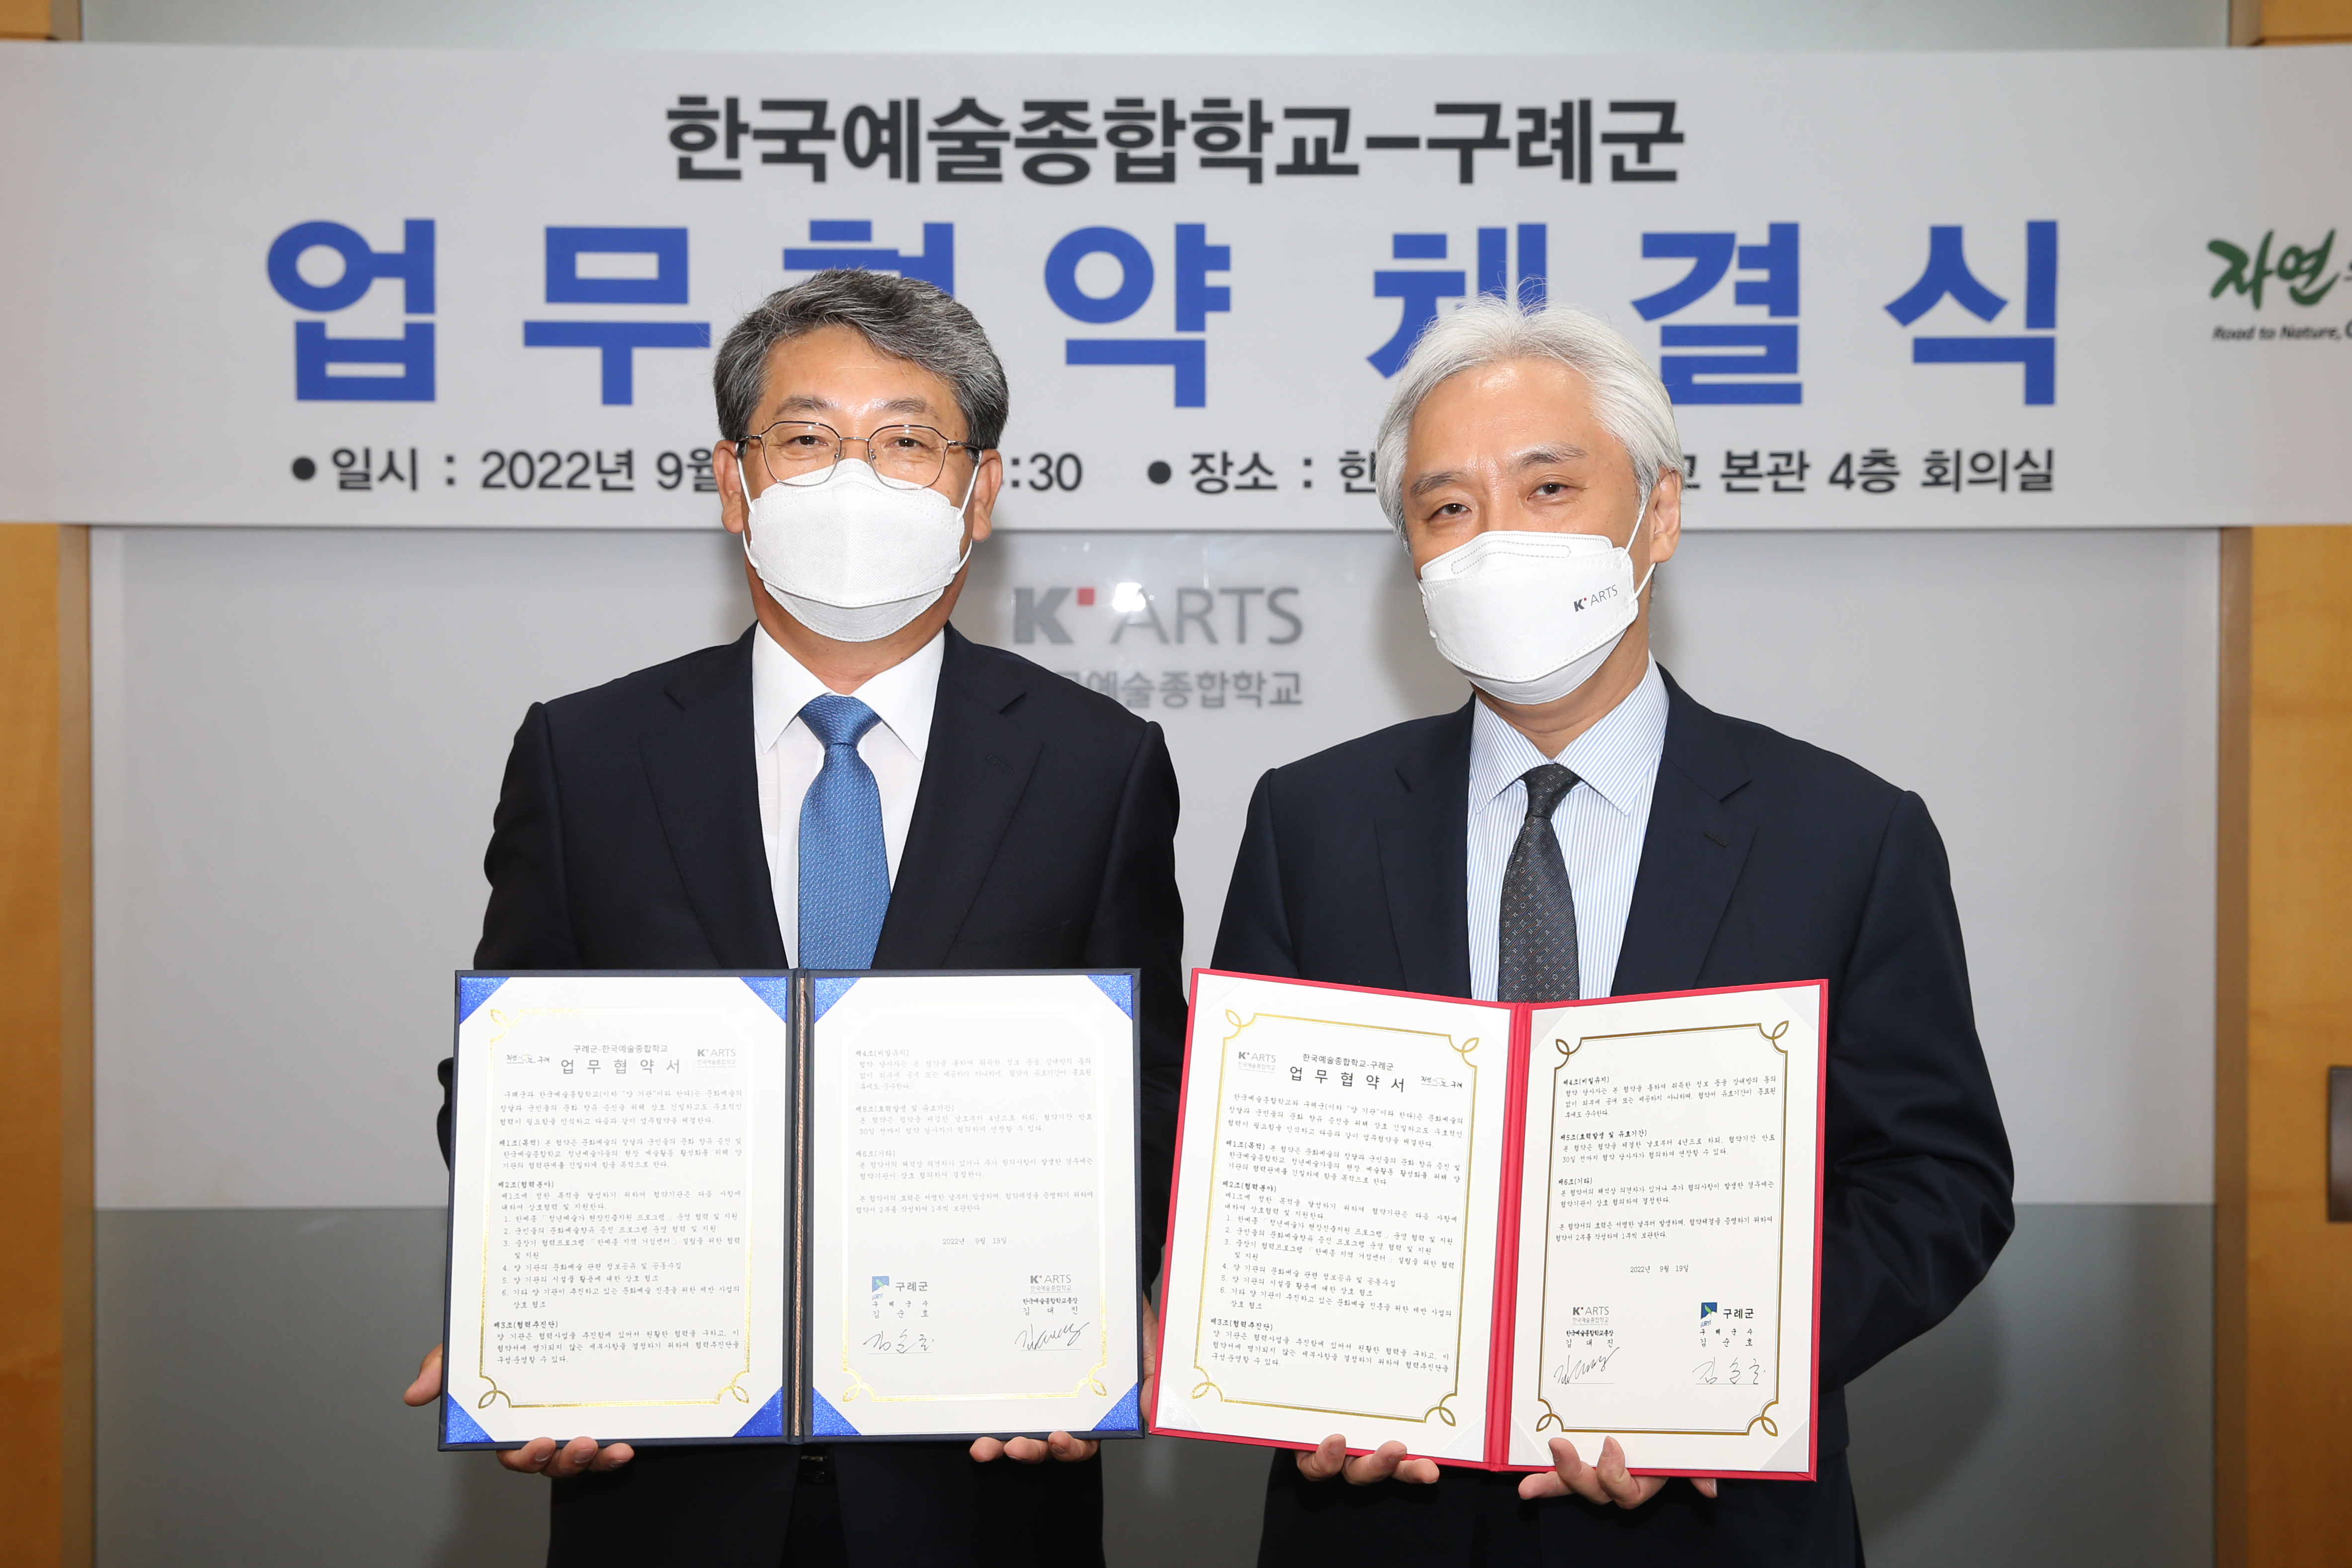 구례군-한국예술종합학교 지역문화예술 활성화를 위한 업무협약 체결